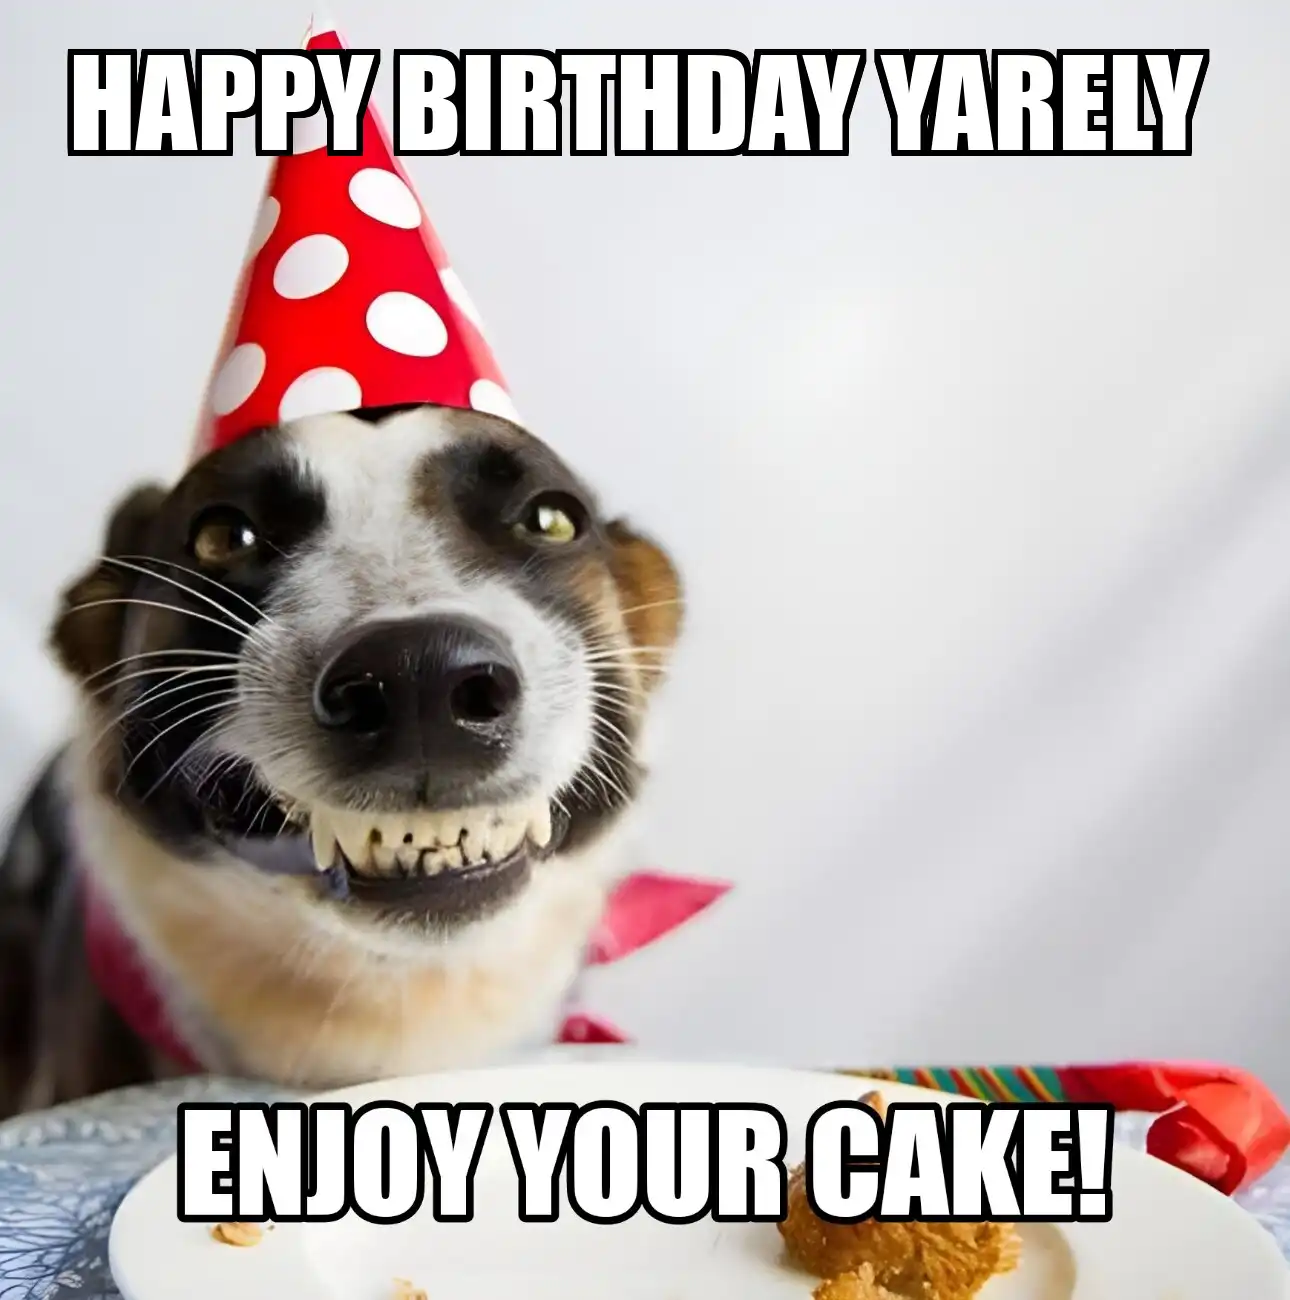 Happy Birthday Yarely Enjoy Your Cake Dog Meme